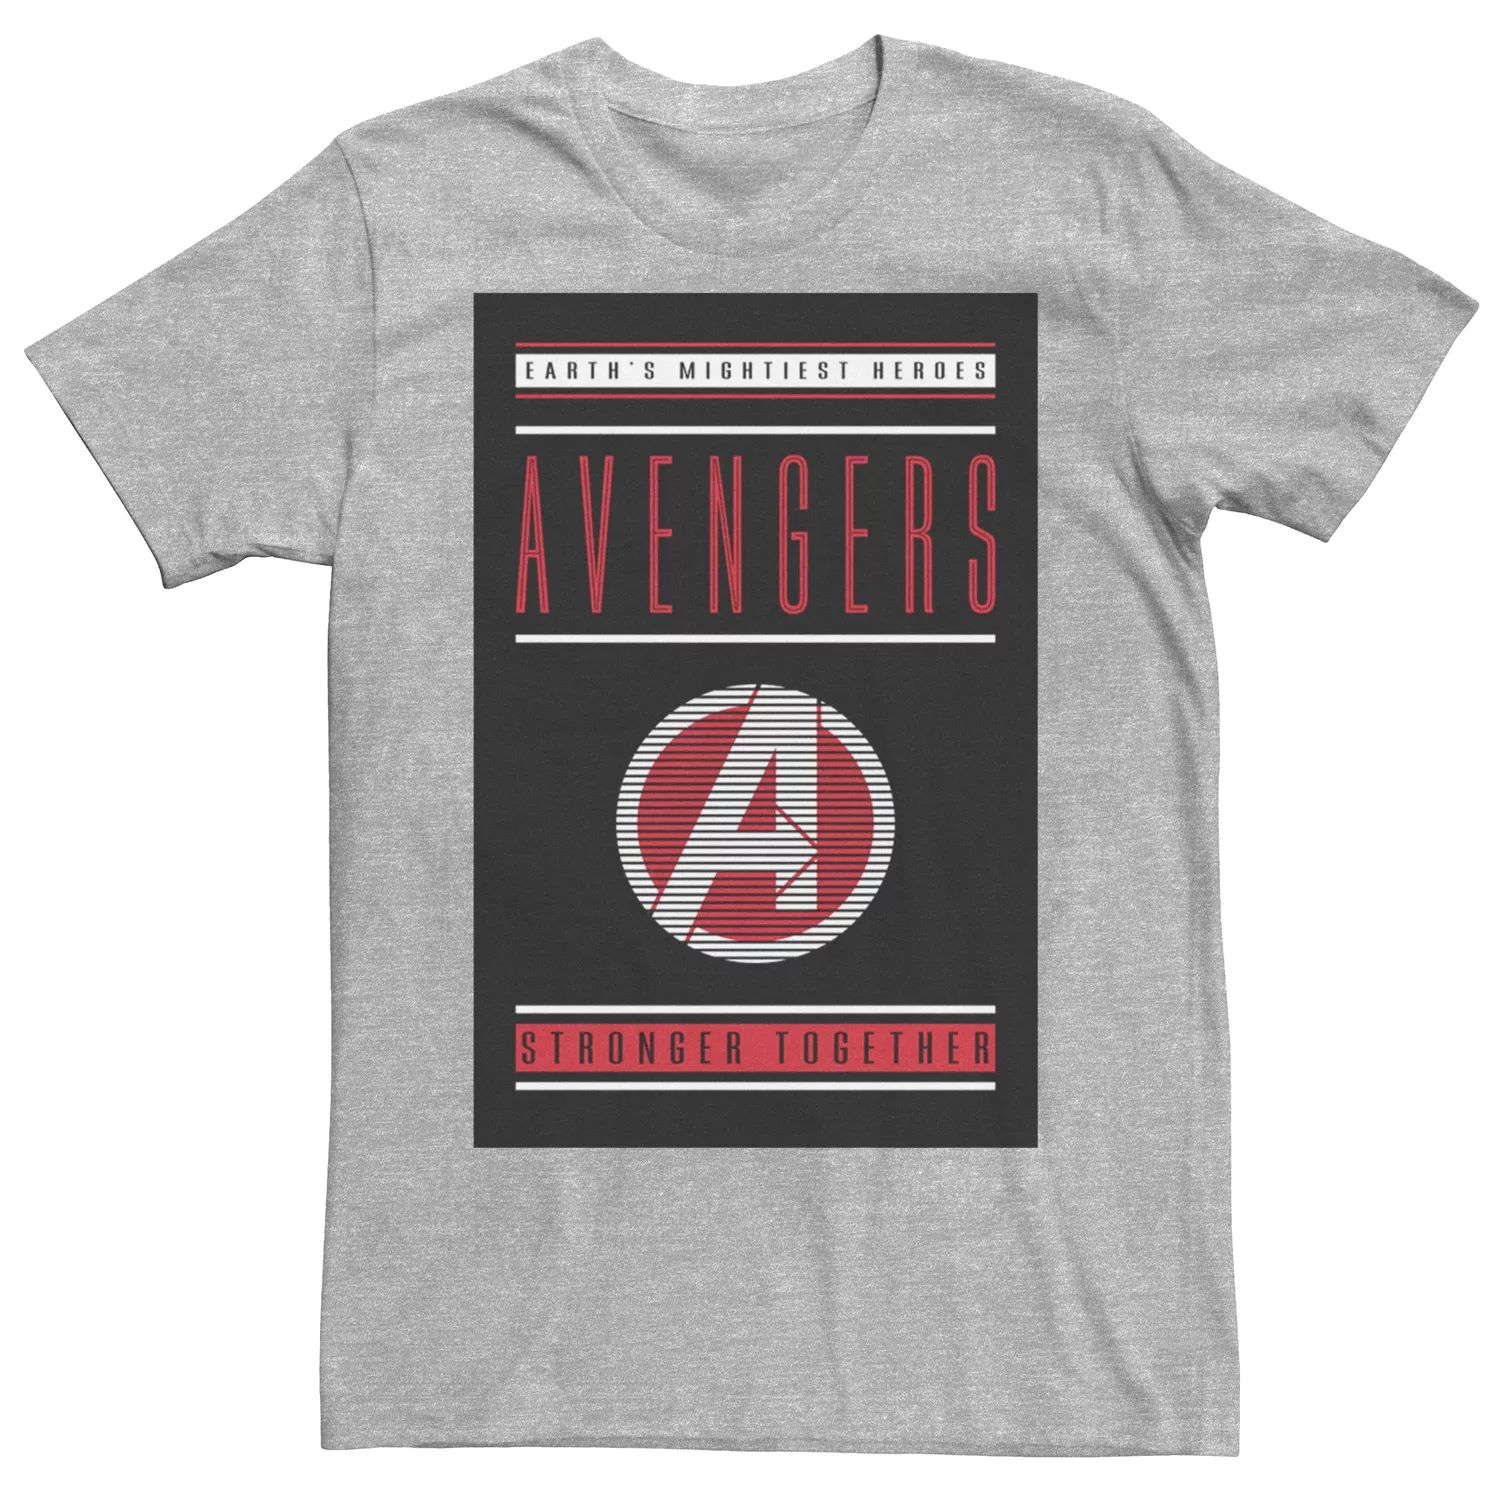 Мужская футболка Avengers Endgame Stronger Together Marvel